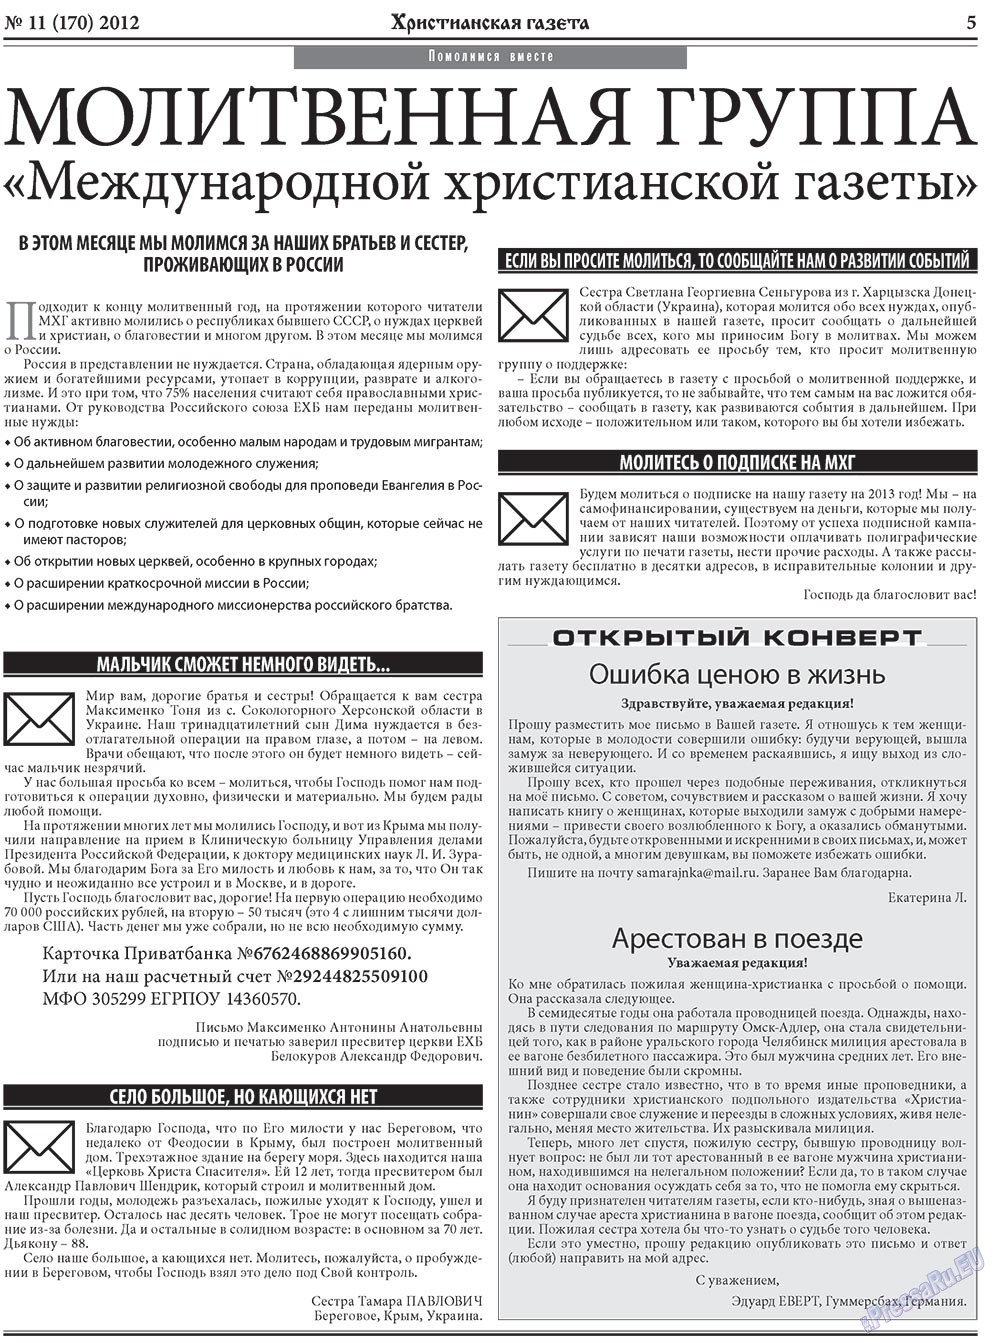 Христианская газета, газета. 2012 №11 стр.5